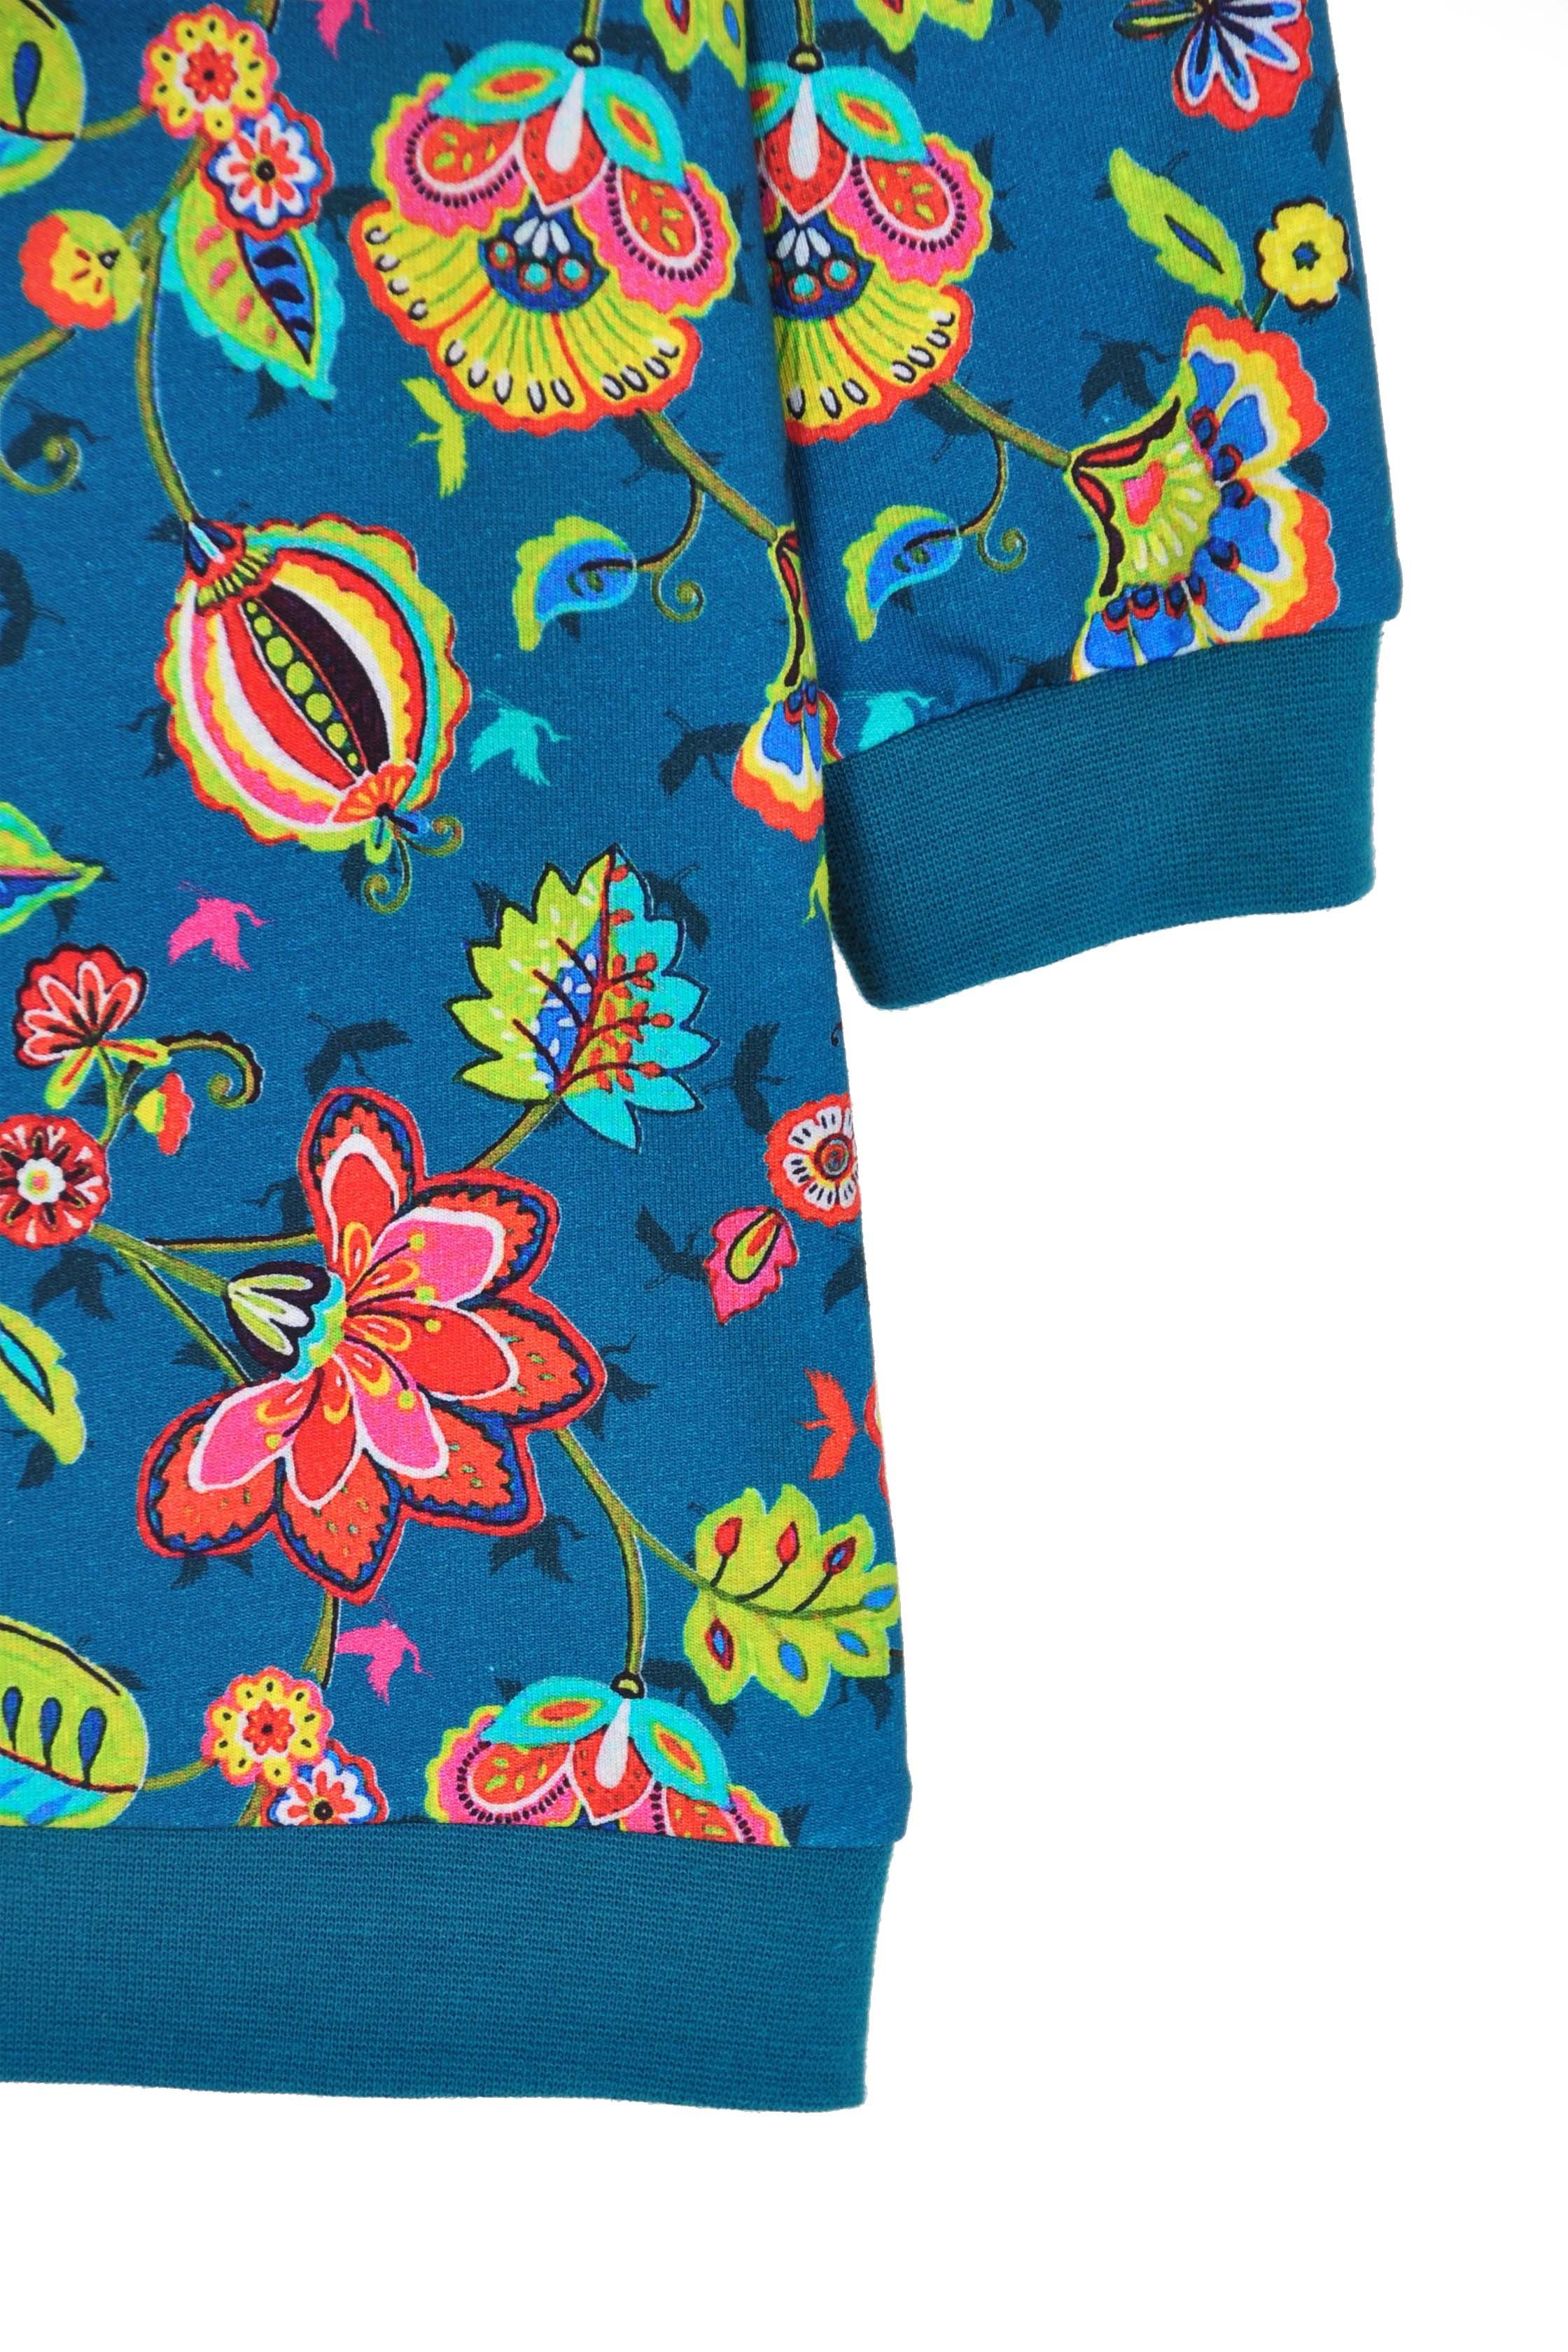 coolismo Sweatkleid Sweatshirt Mädchen Motivdruck petrol Kleid Blumen mit coole europäische Produktion für